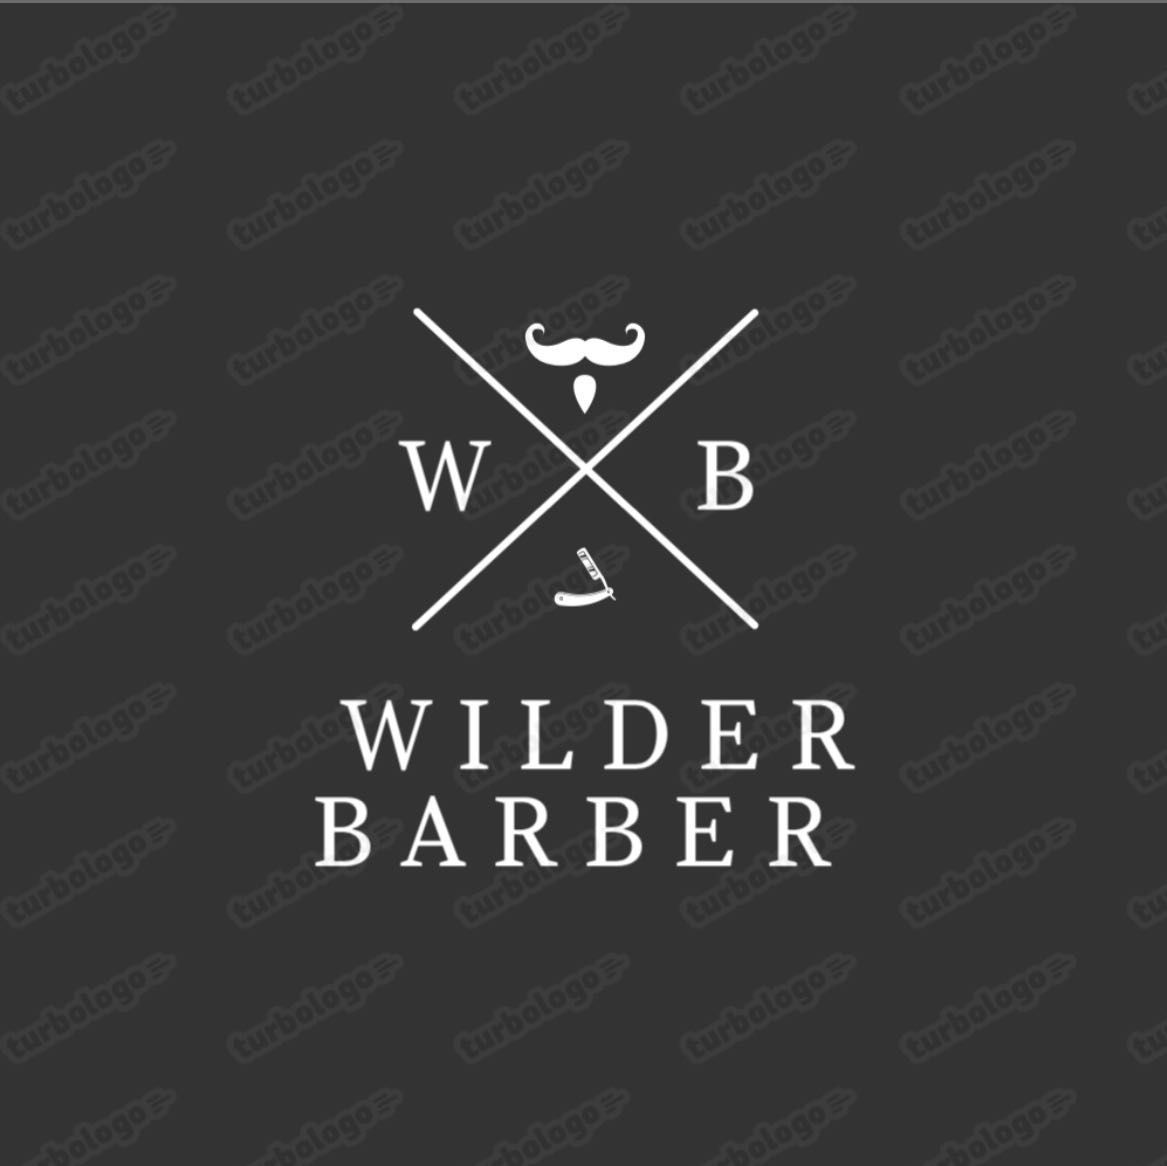 Wilder Barber, 6033 N-I Interstate 35 frontage rd, 6033, Austin, 78723